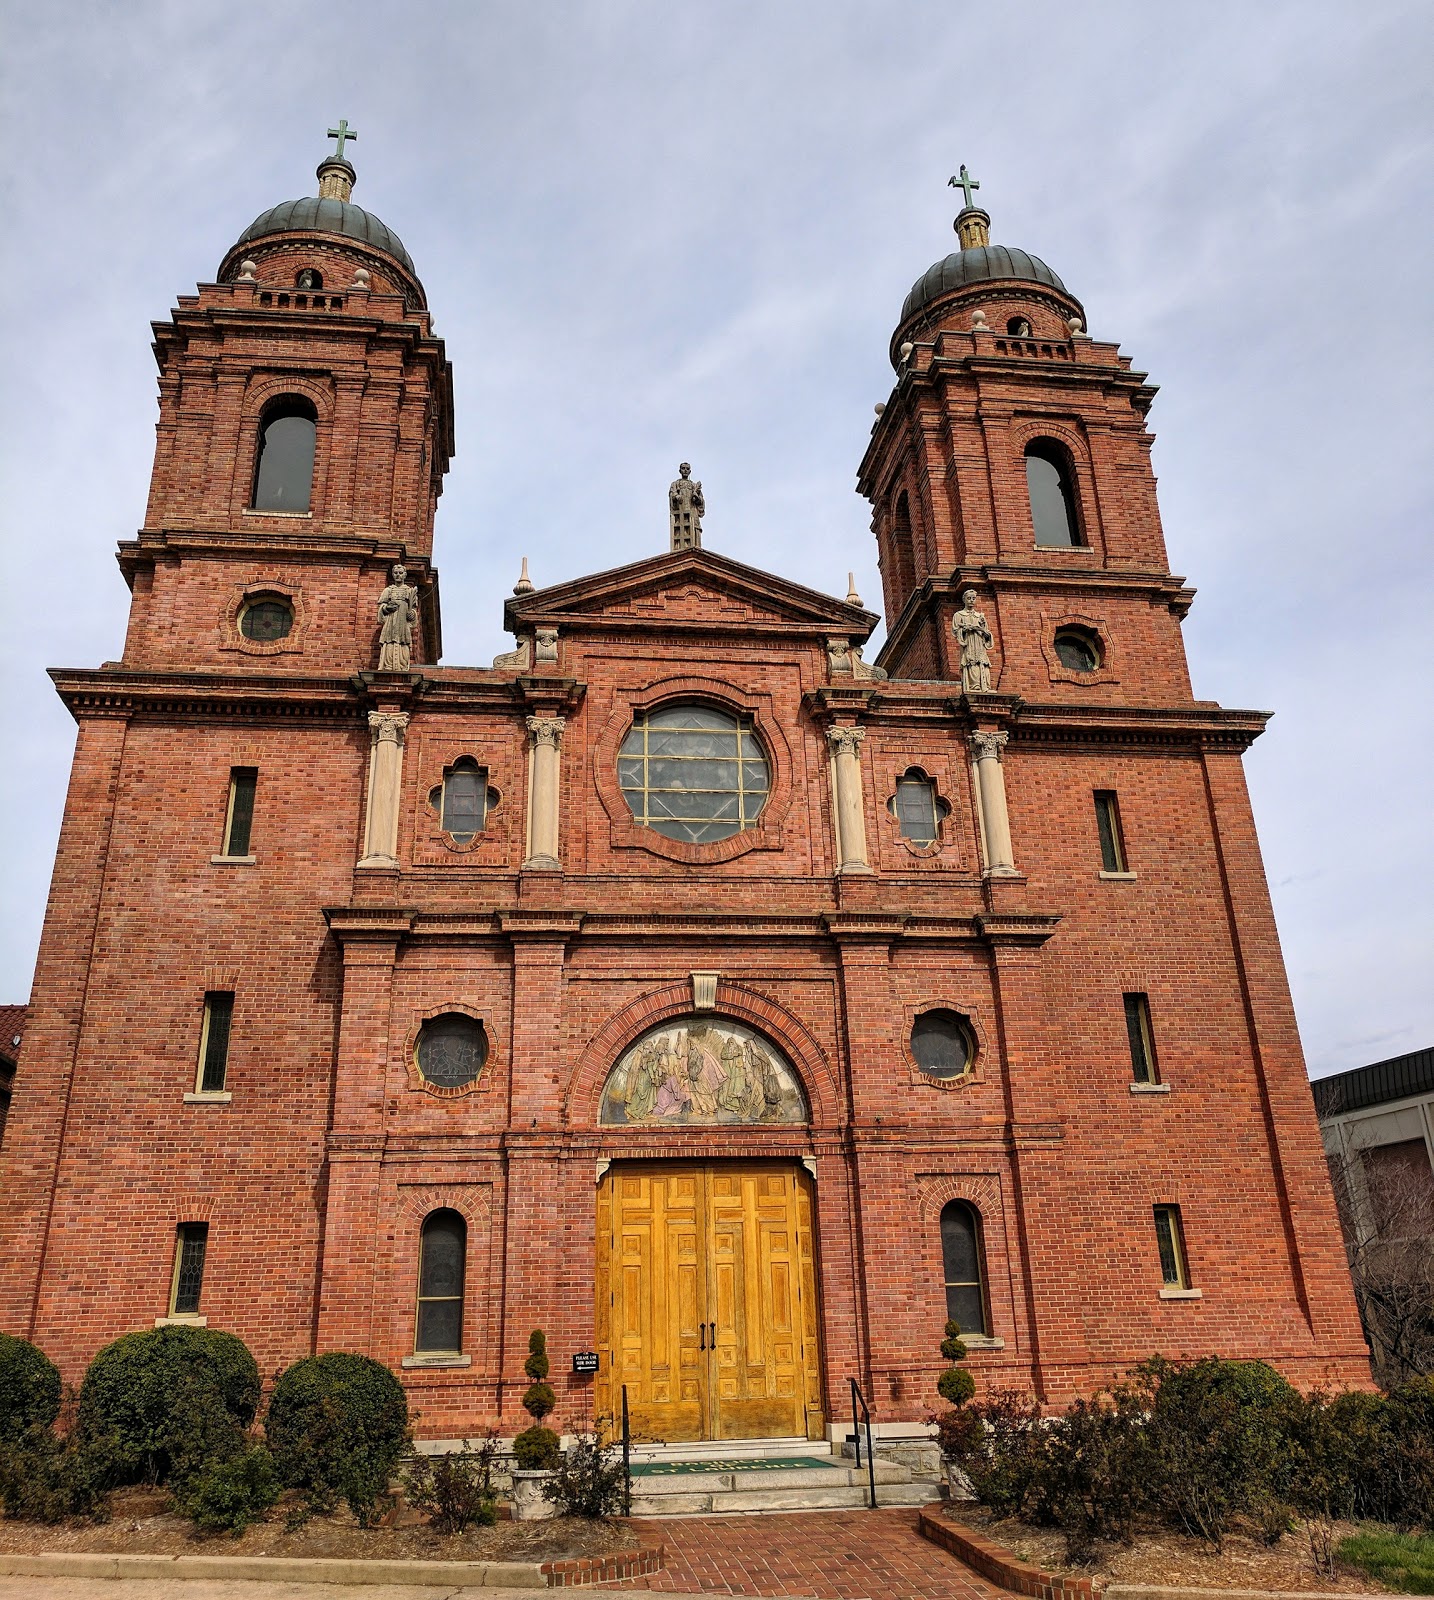 Basilica of Saint Lawrence